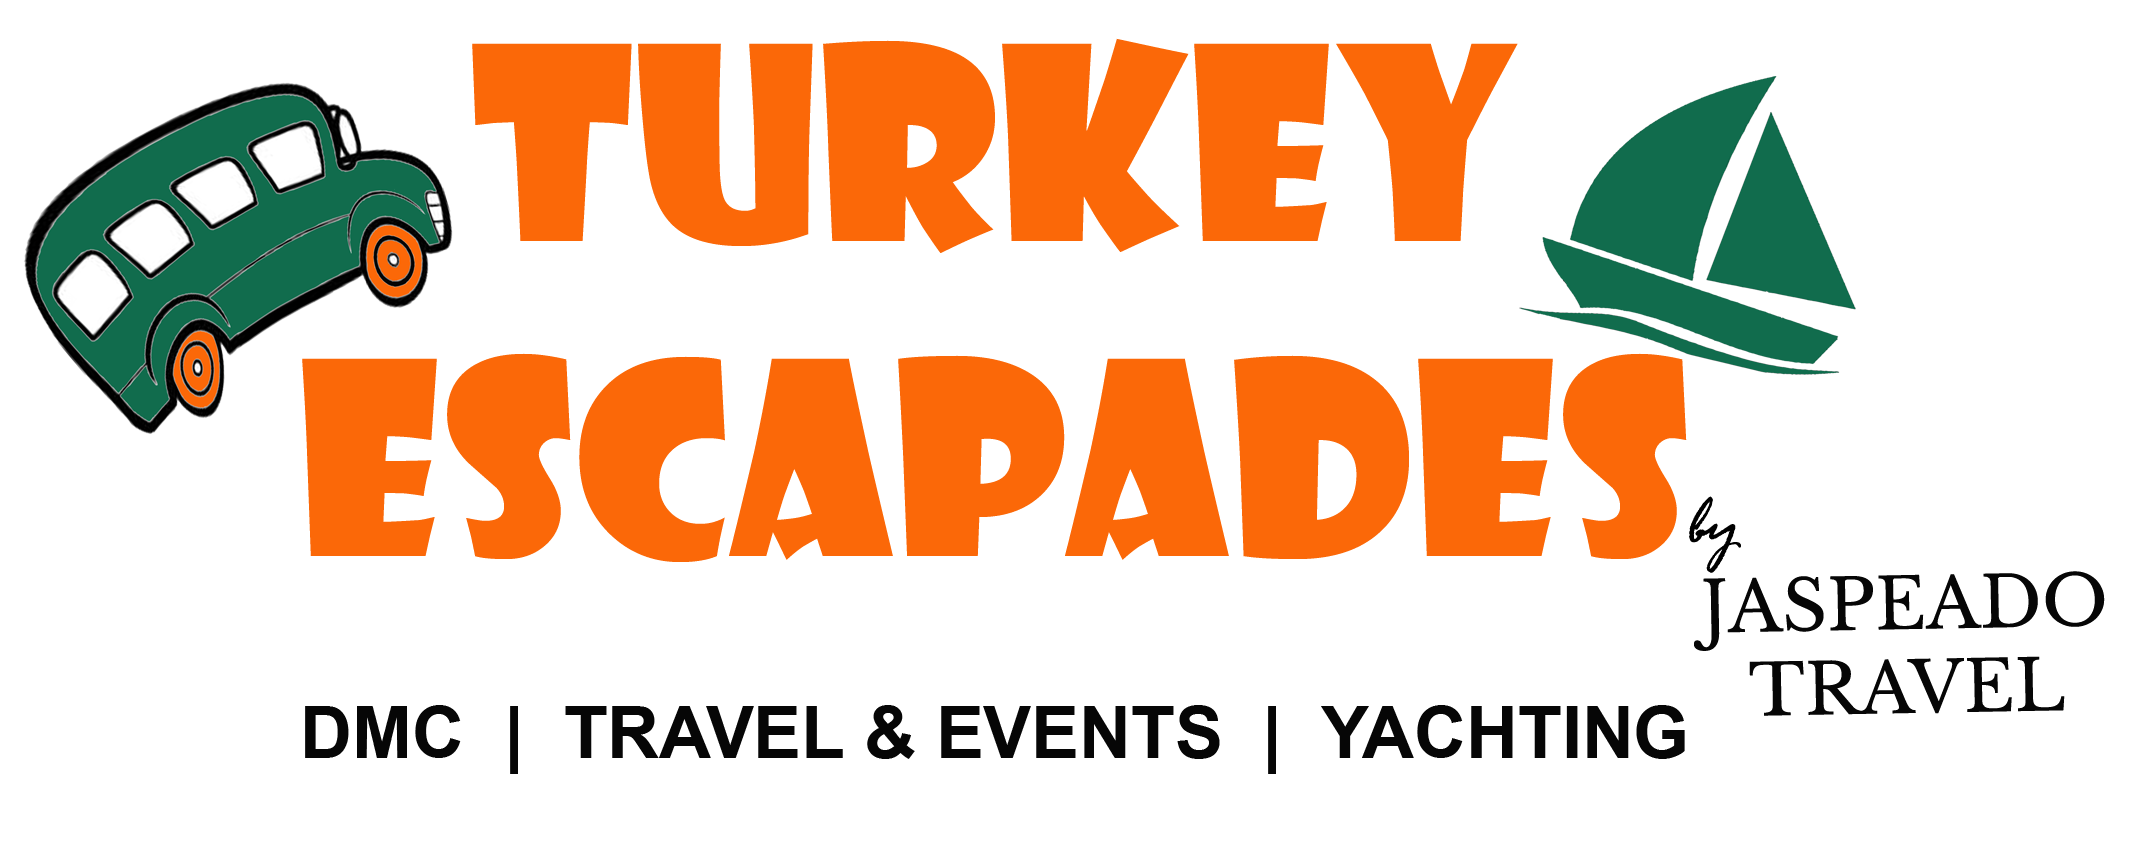 Turkey Escapades | 10 Days Ertugrul Classic Turkey Tour - Turkey Escapades Ertugrul Classic